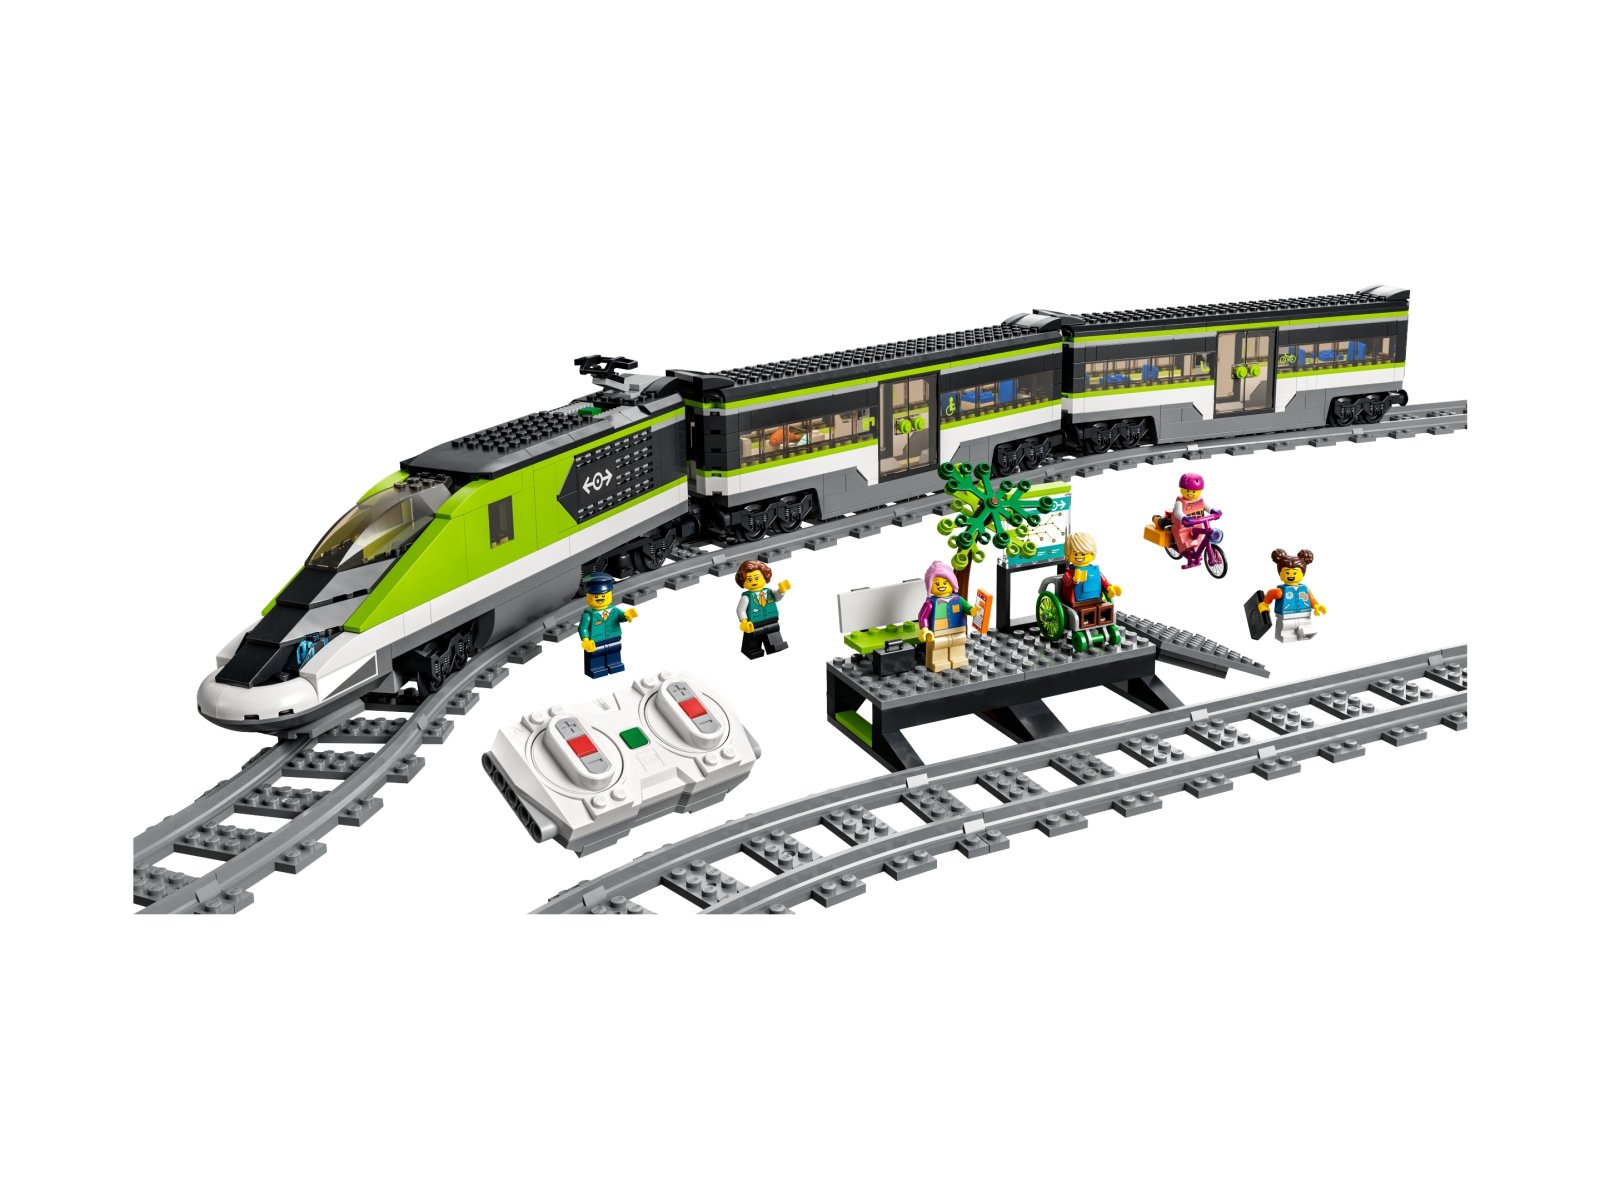 LEGO 60337 Ekspresowy pociąg pasażerski